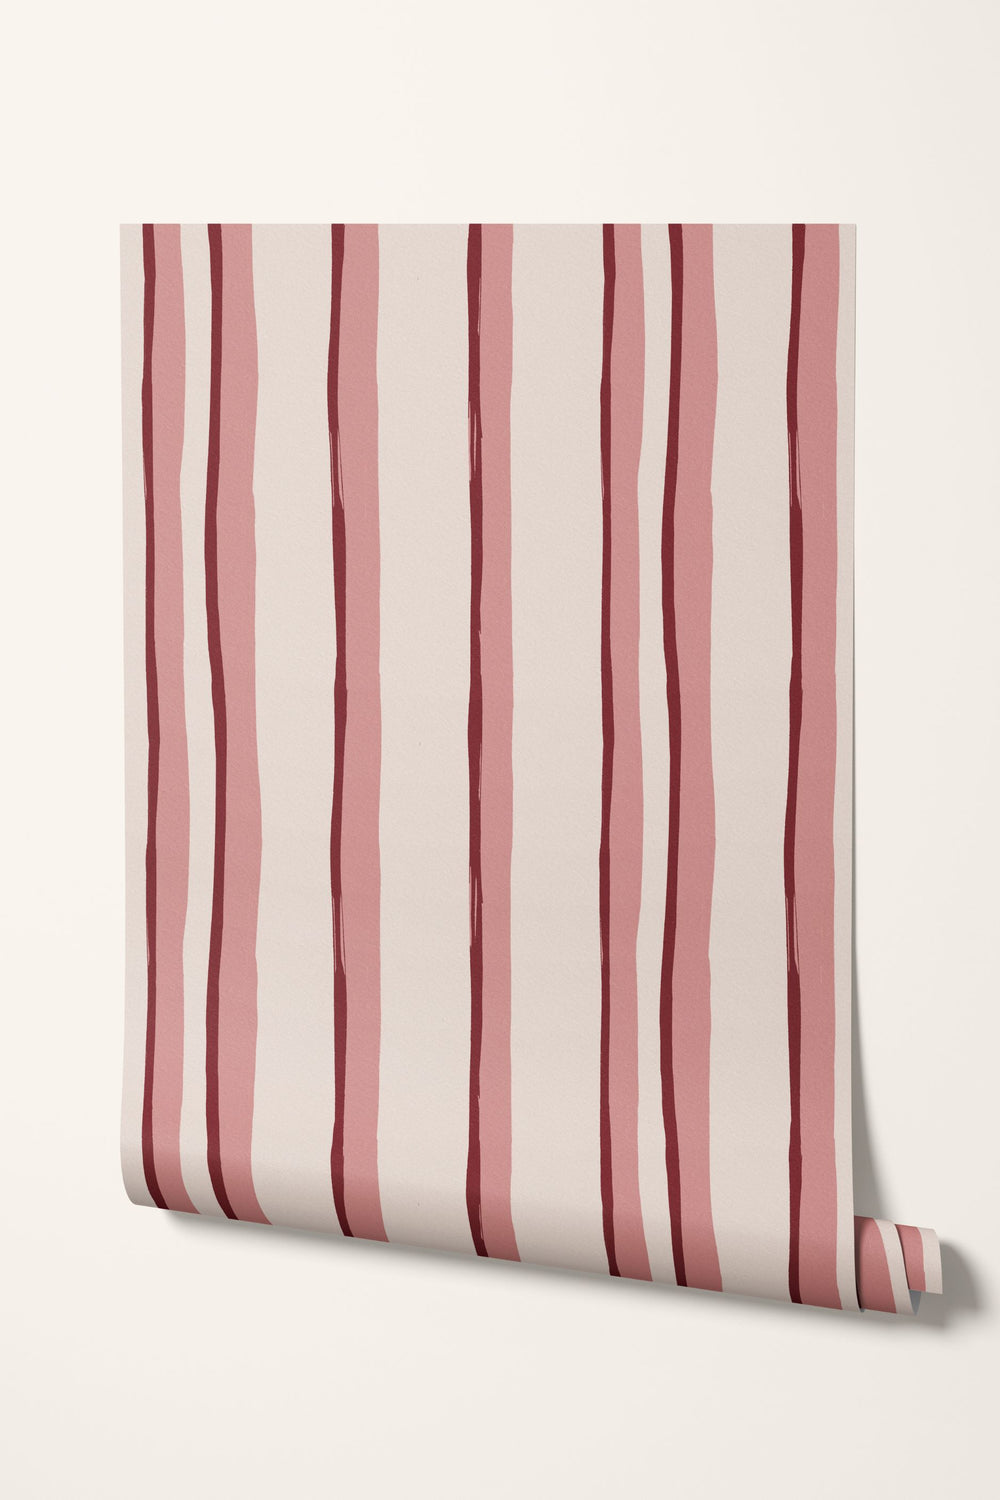 Somerset Stripes Wallpaper - Pinks